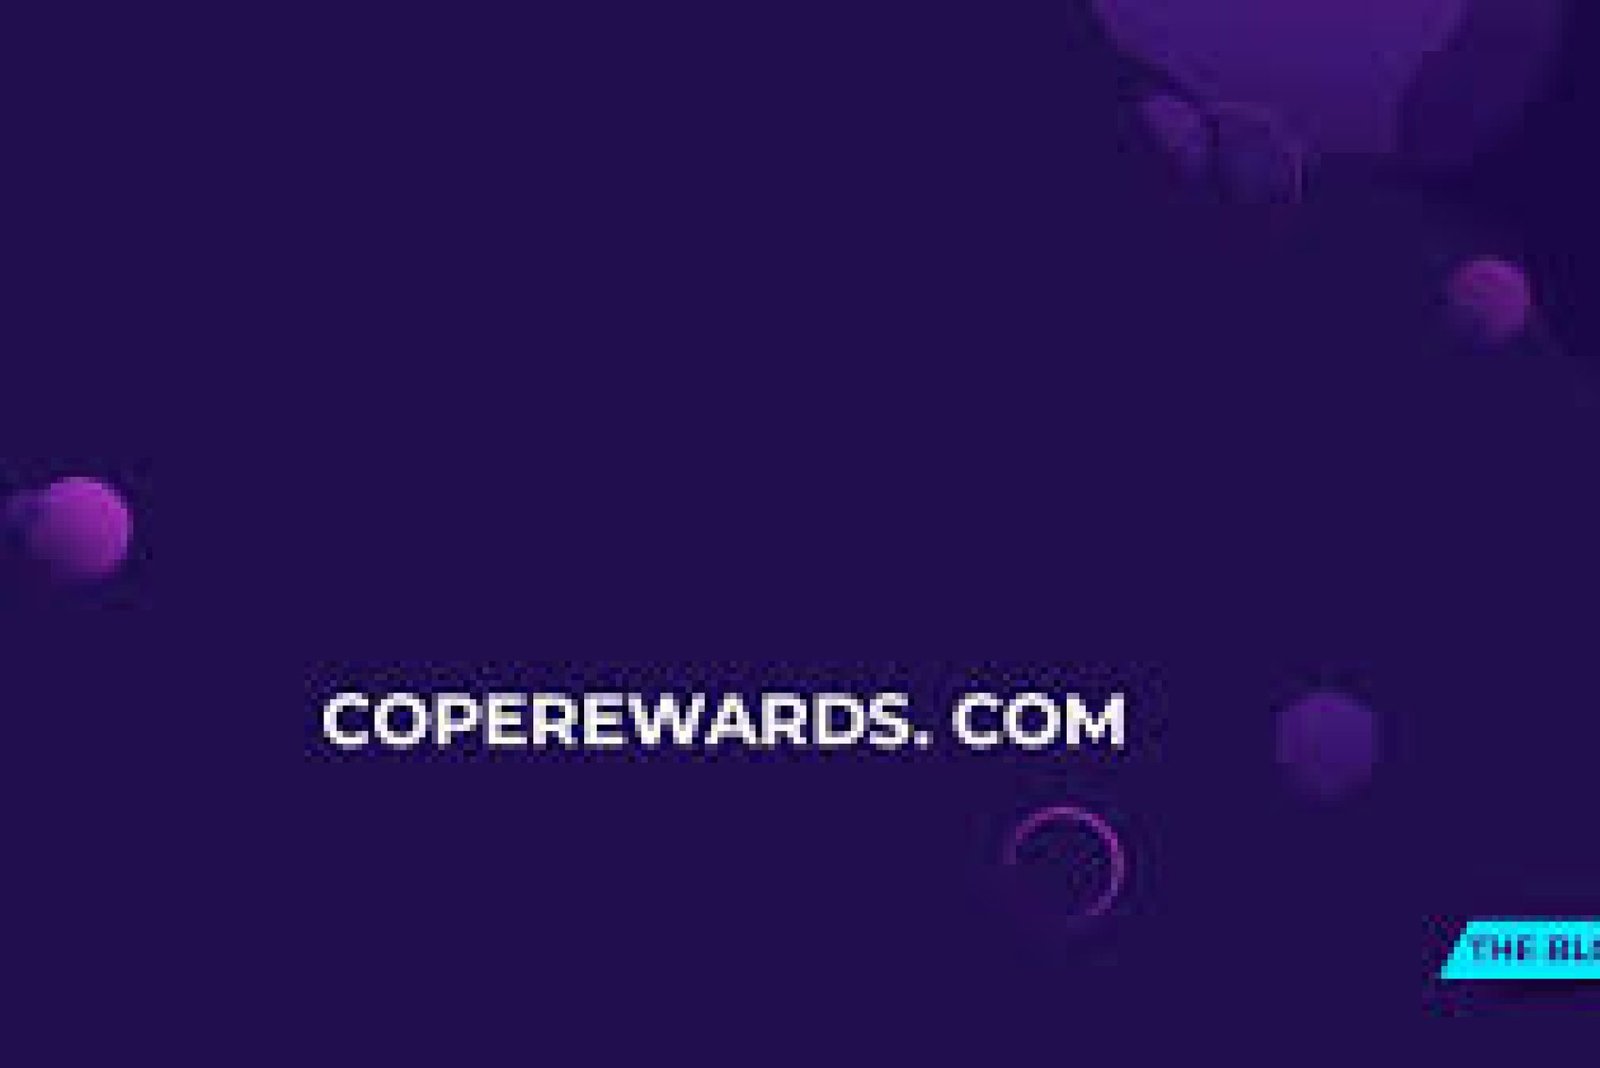 coperewards.com: A Game Changer